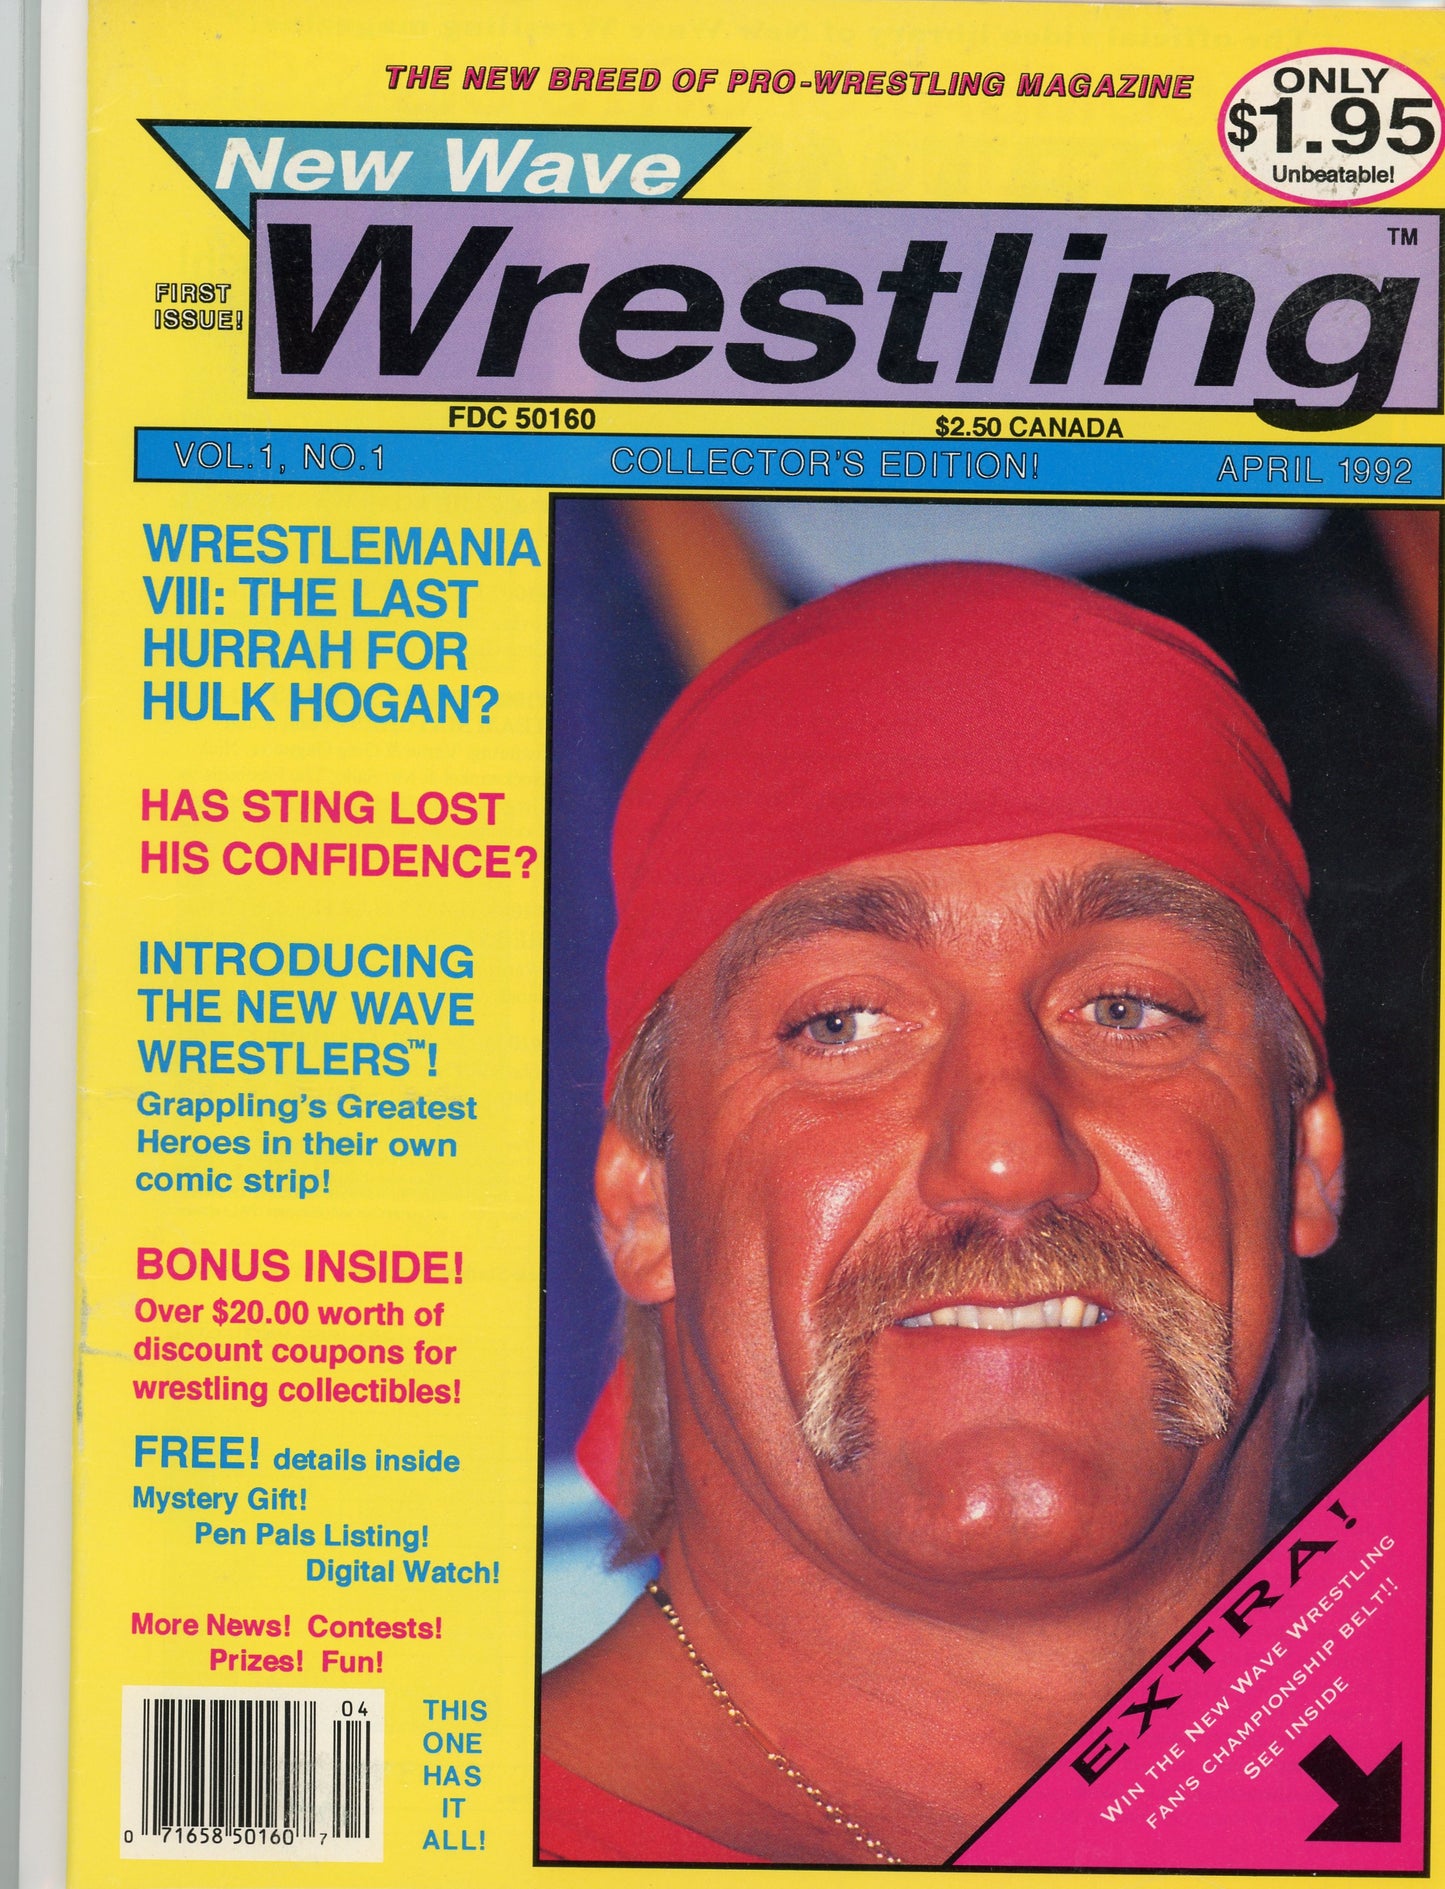 New Wave Wrestling Vintage Magazine (April, 1992) Hogan, Rare Debut Issue!